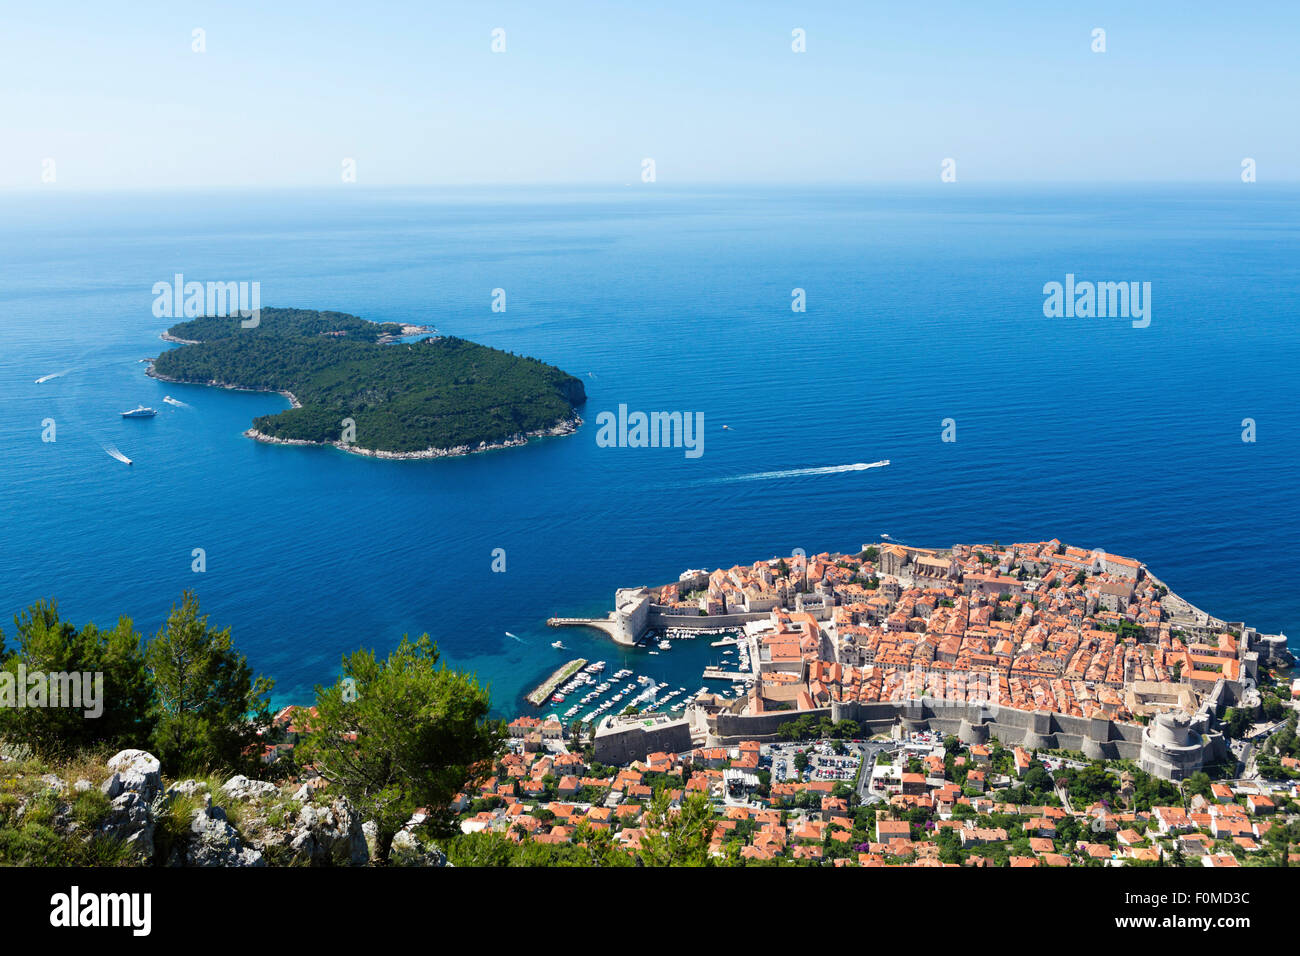 Ansicht der Stadt von Dubrovnik - die Lage von King's Landing im Spiel der Throne Filme Stockfoto